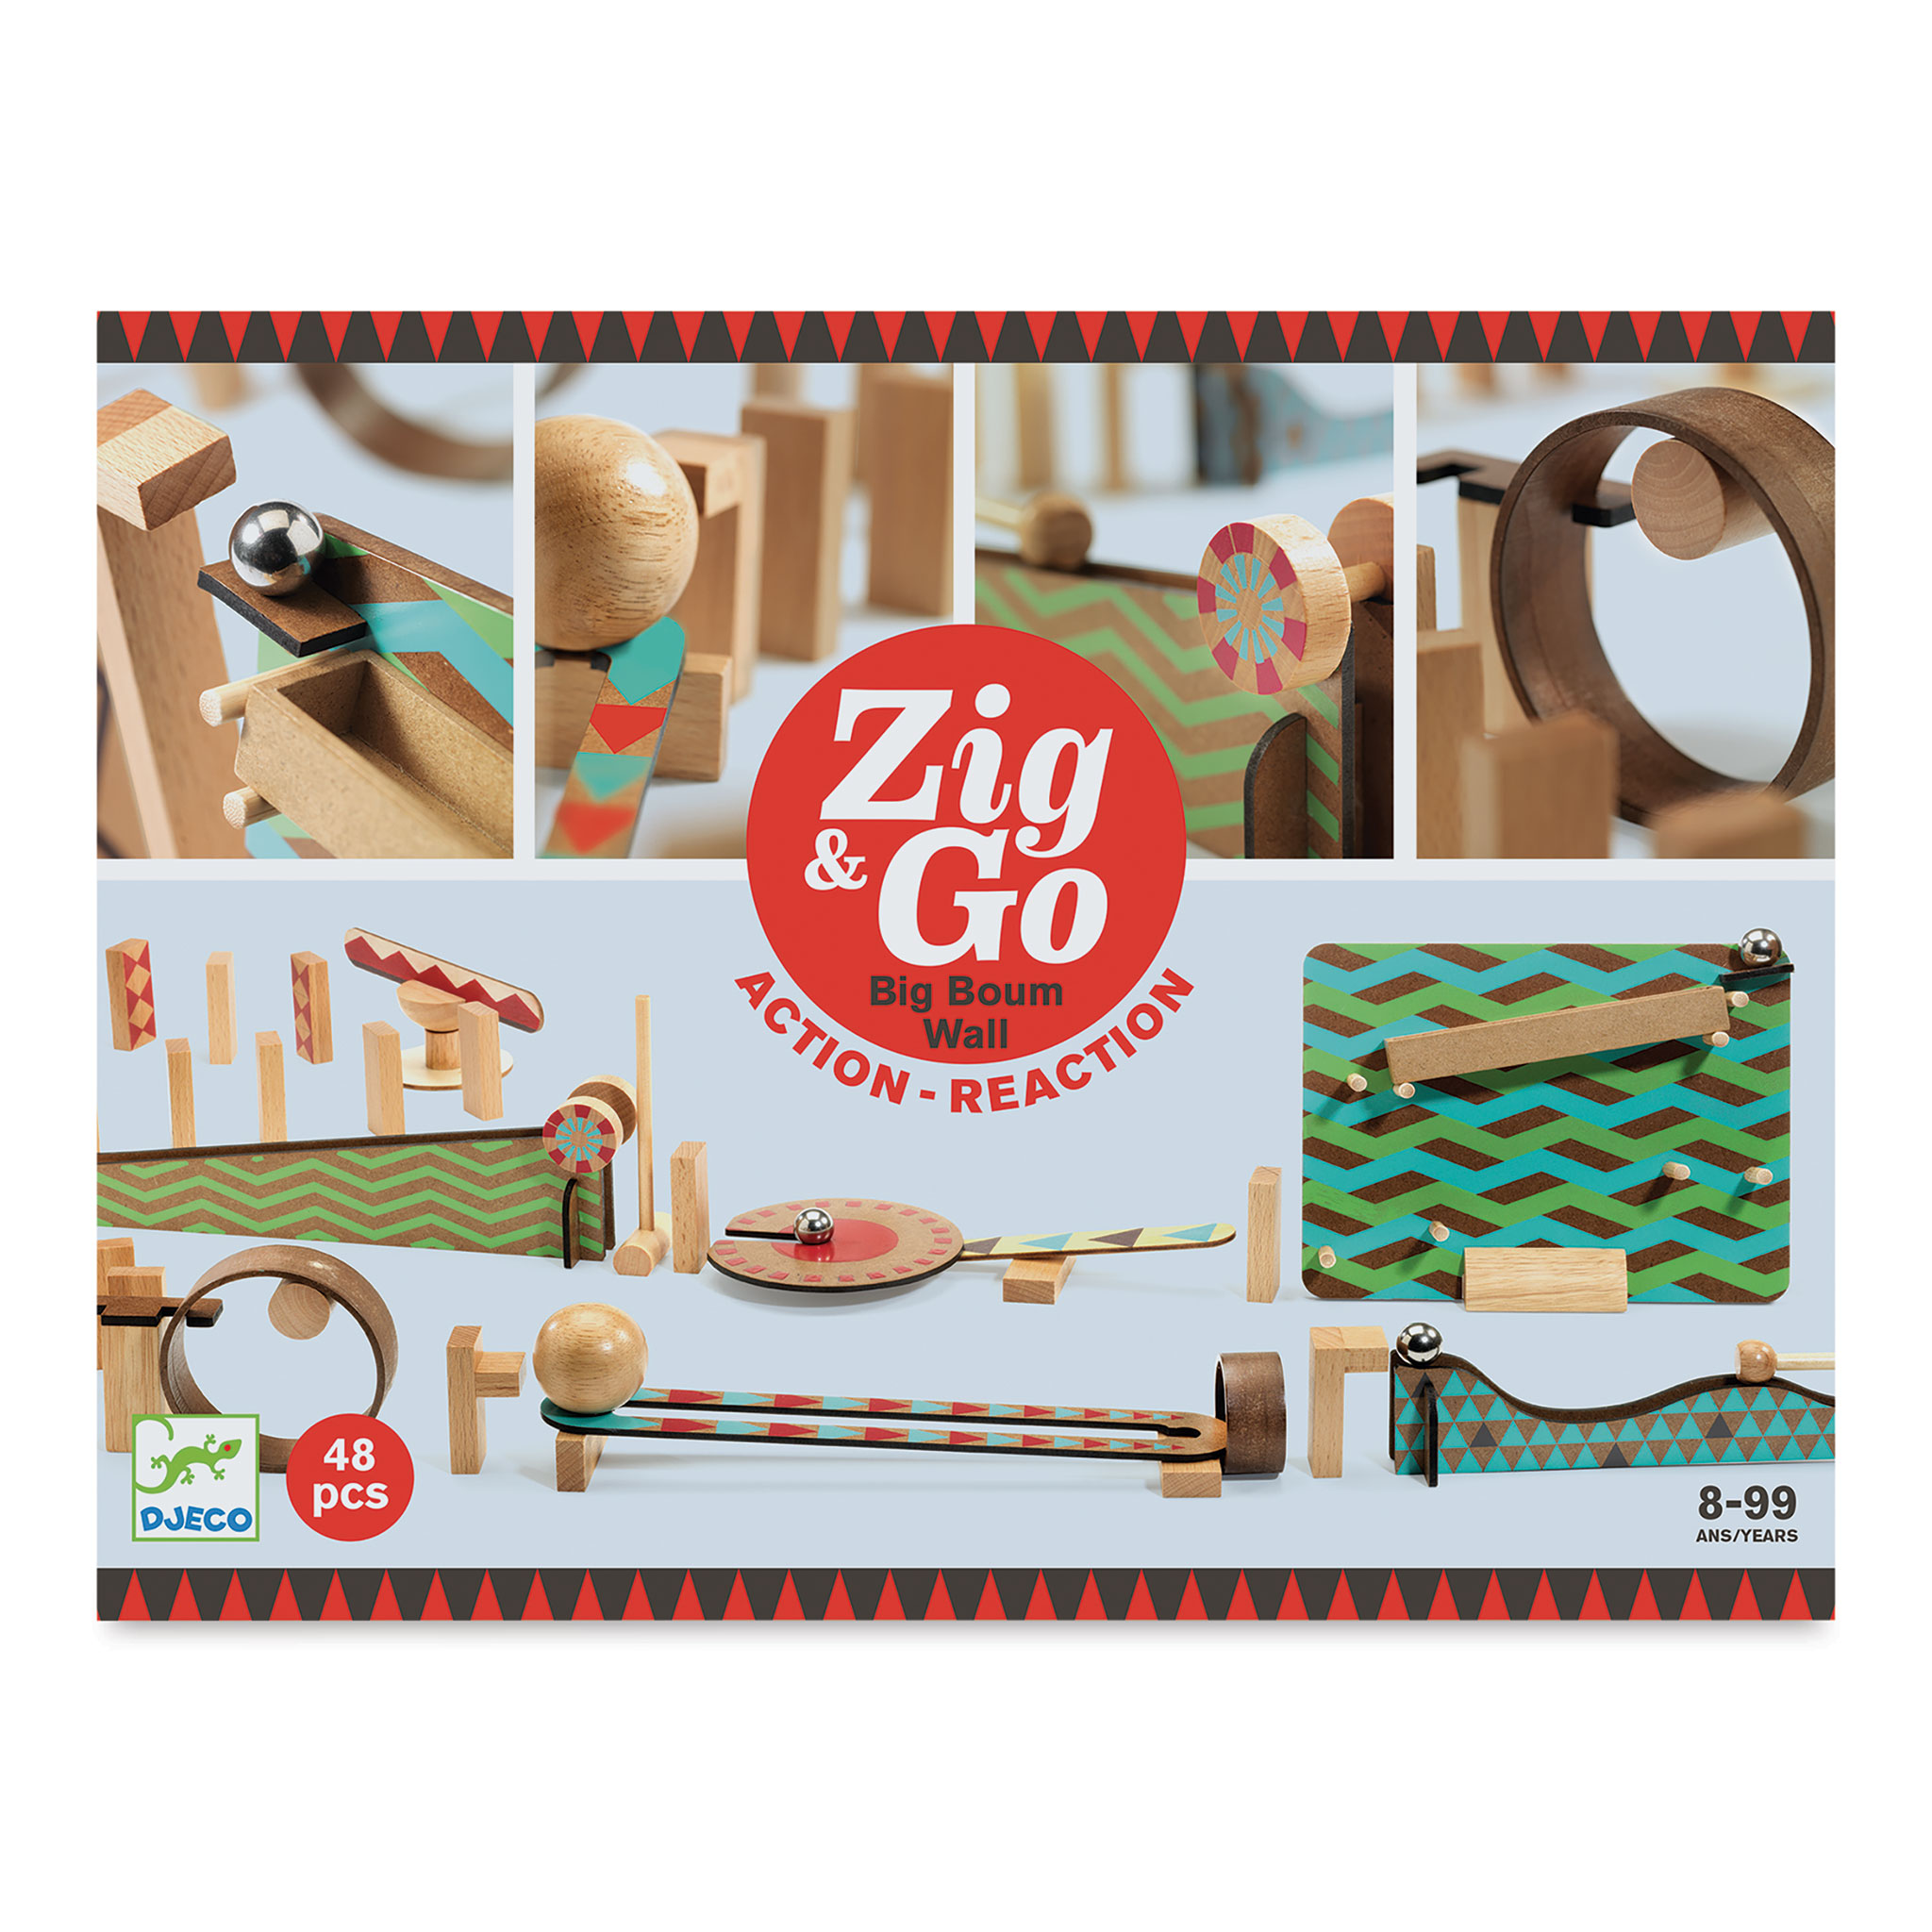 Zig & Go – Child's Play